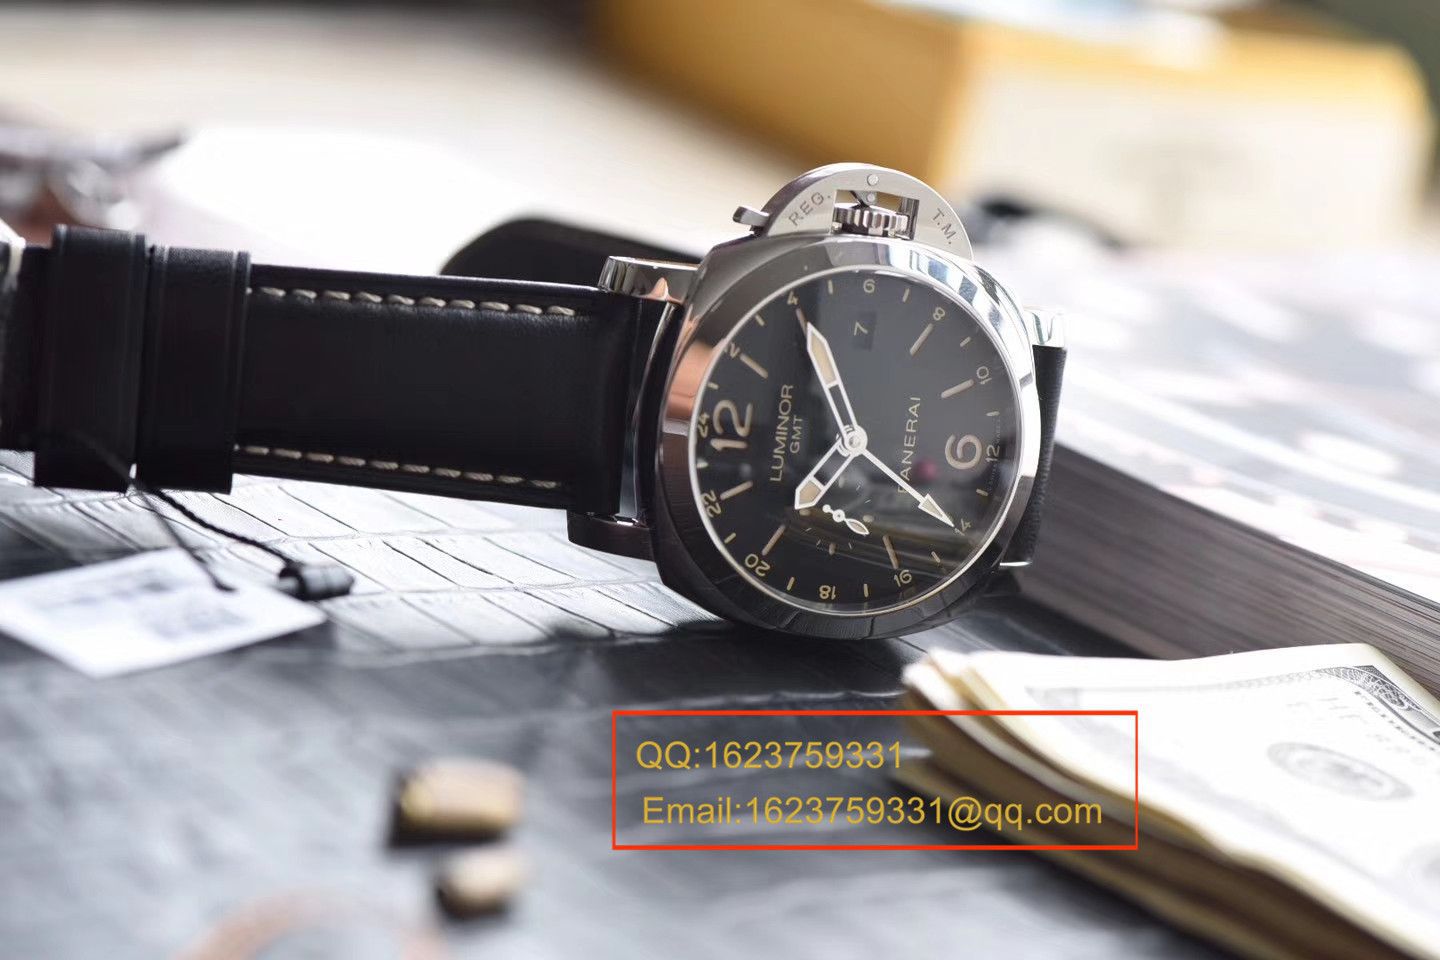 视频评测沛纳海LUMINOR 1950系列PAM00531腕表一比一高仿手表【VS出品，PAM531  GMT 两地时】 / VSPAM00531MM